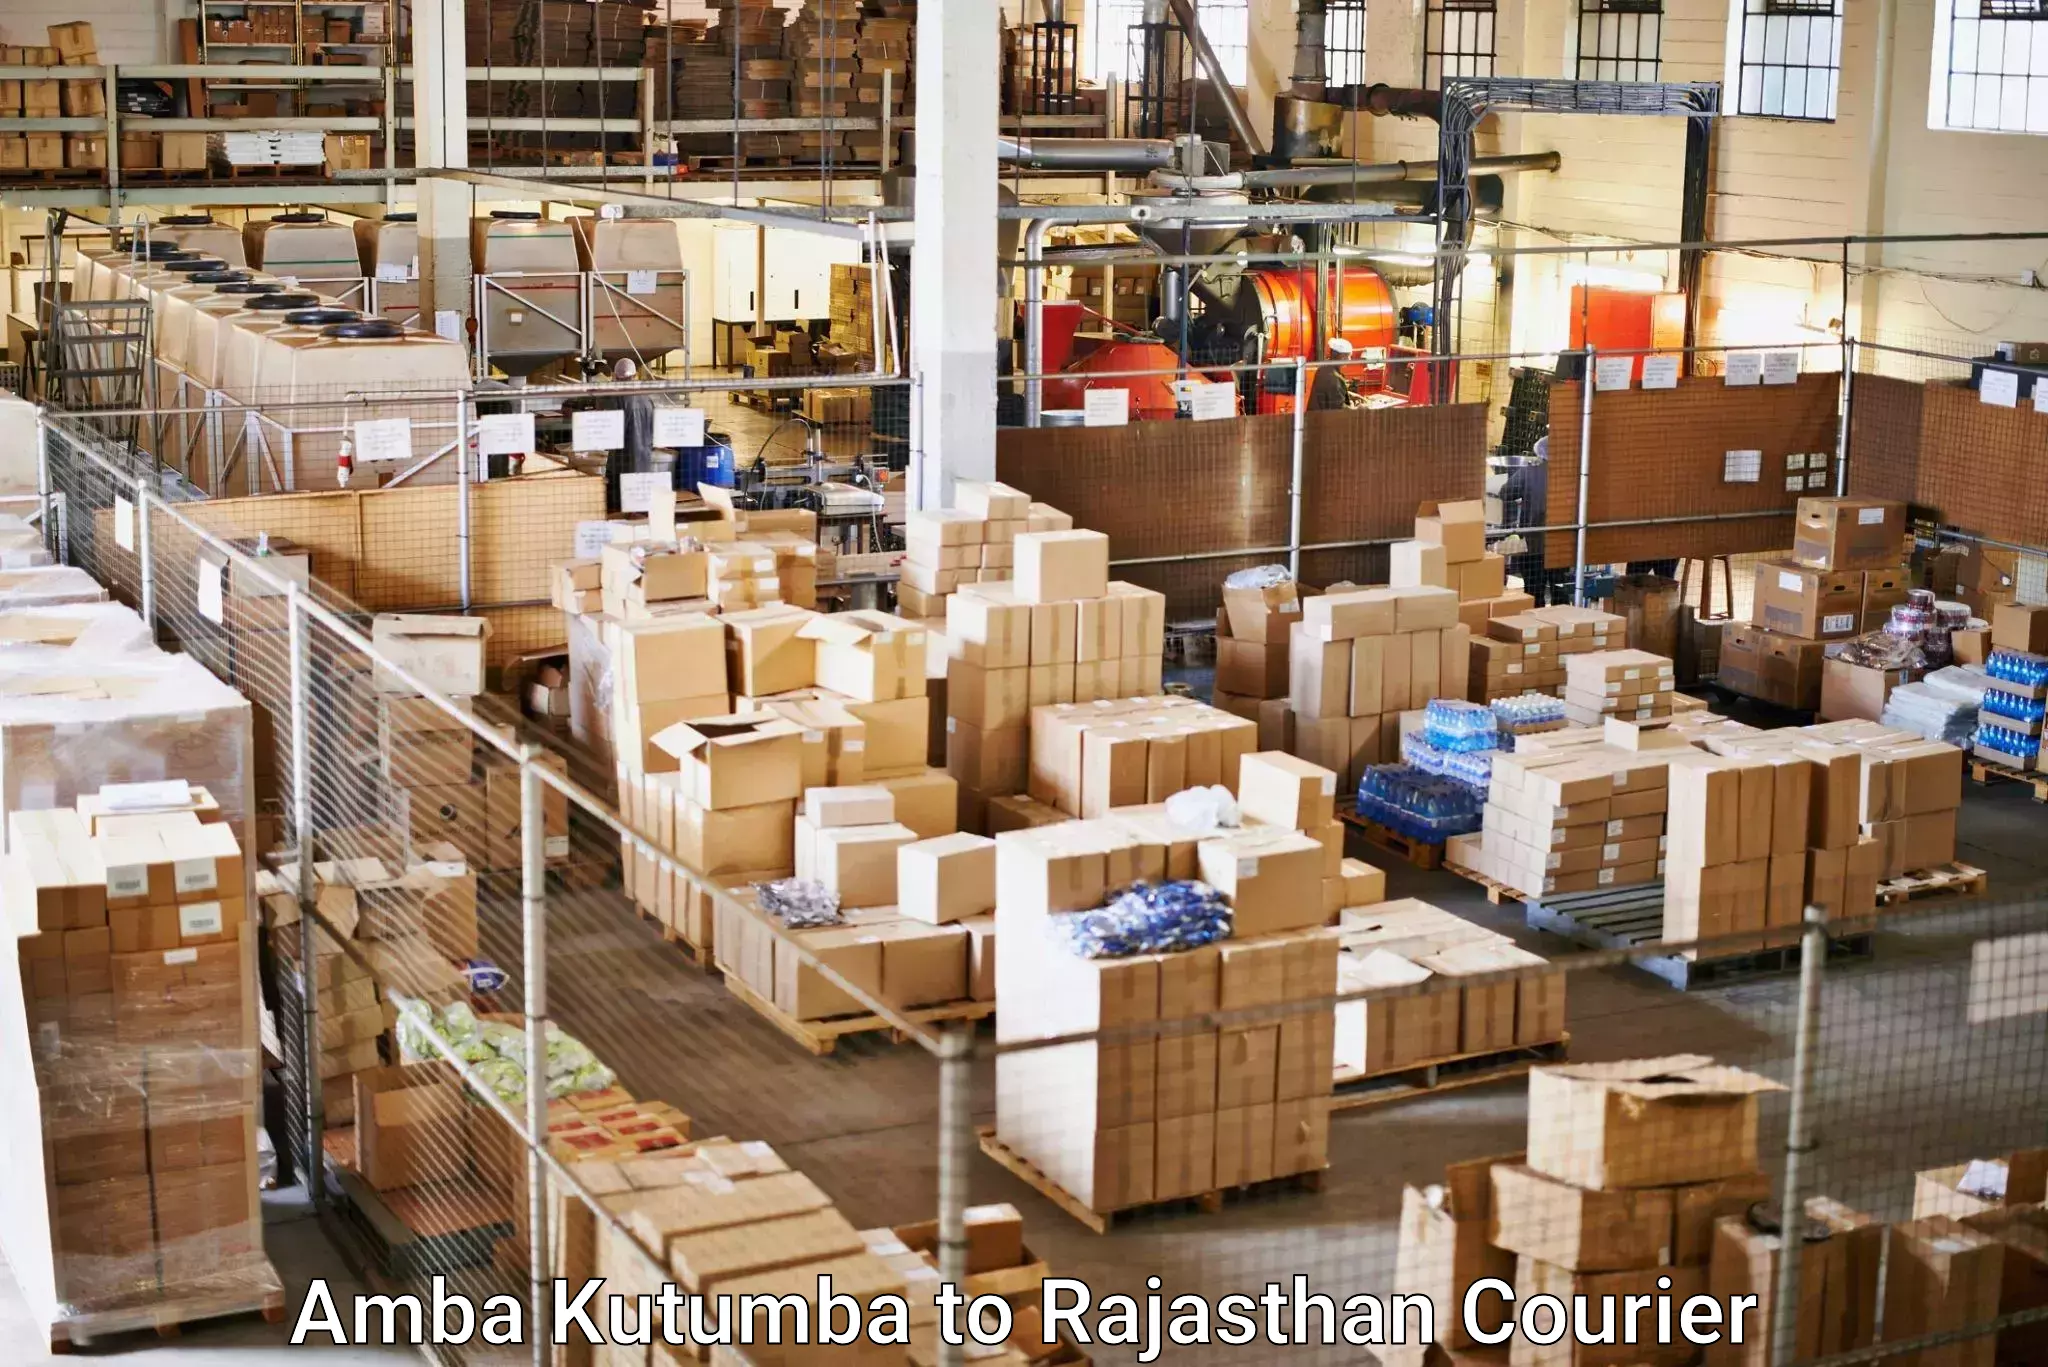 Fast shipping solutions Amba Kutumba to Suratgarh